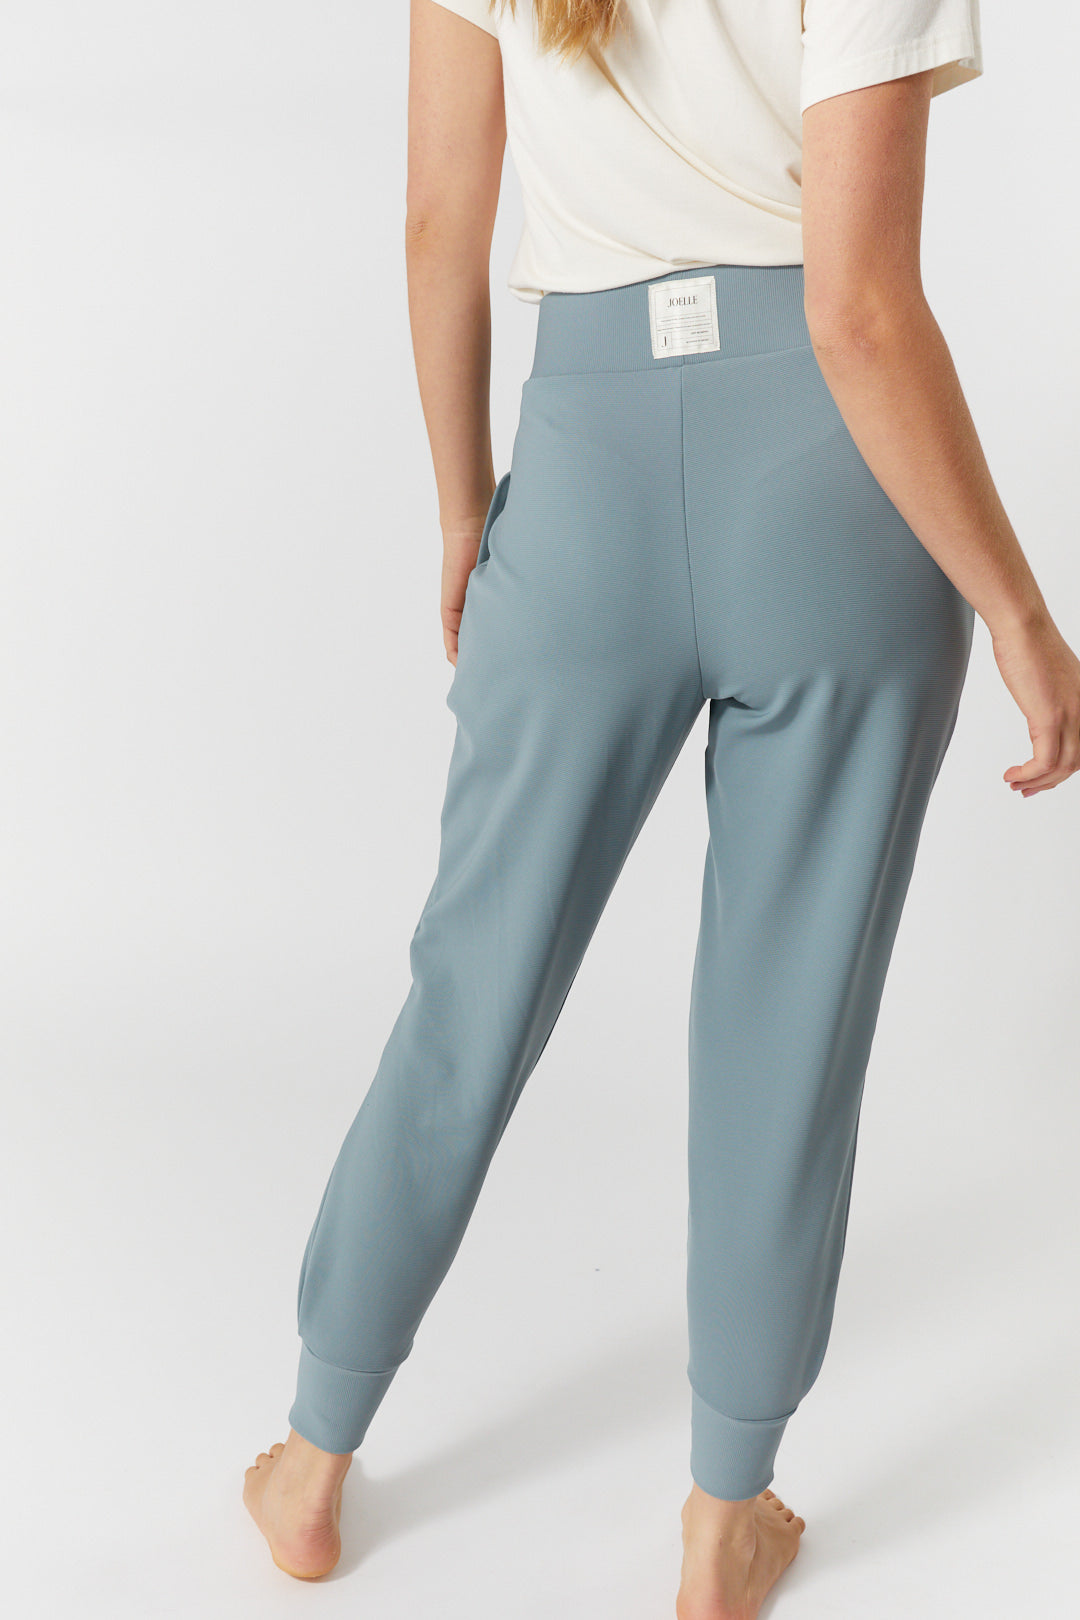 Pantalon Détente Bleu Taille Haute Pour Femme Remy JOELLE, 44% OFF